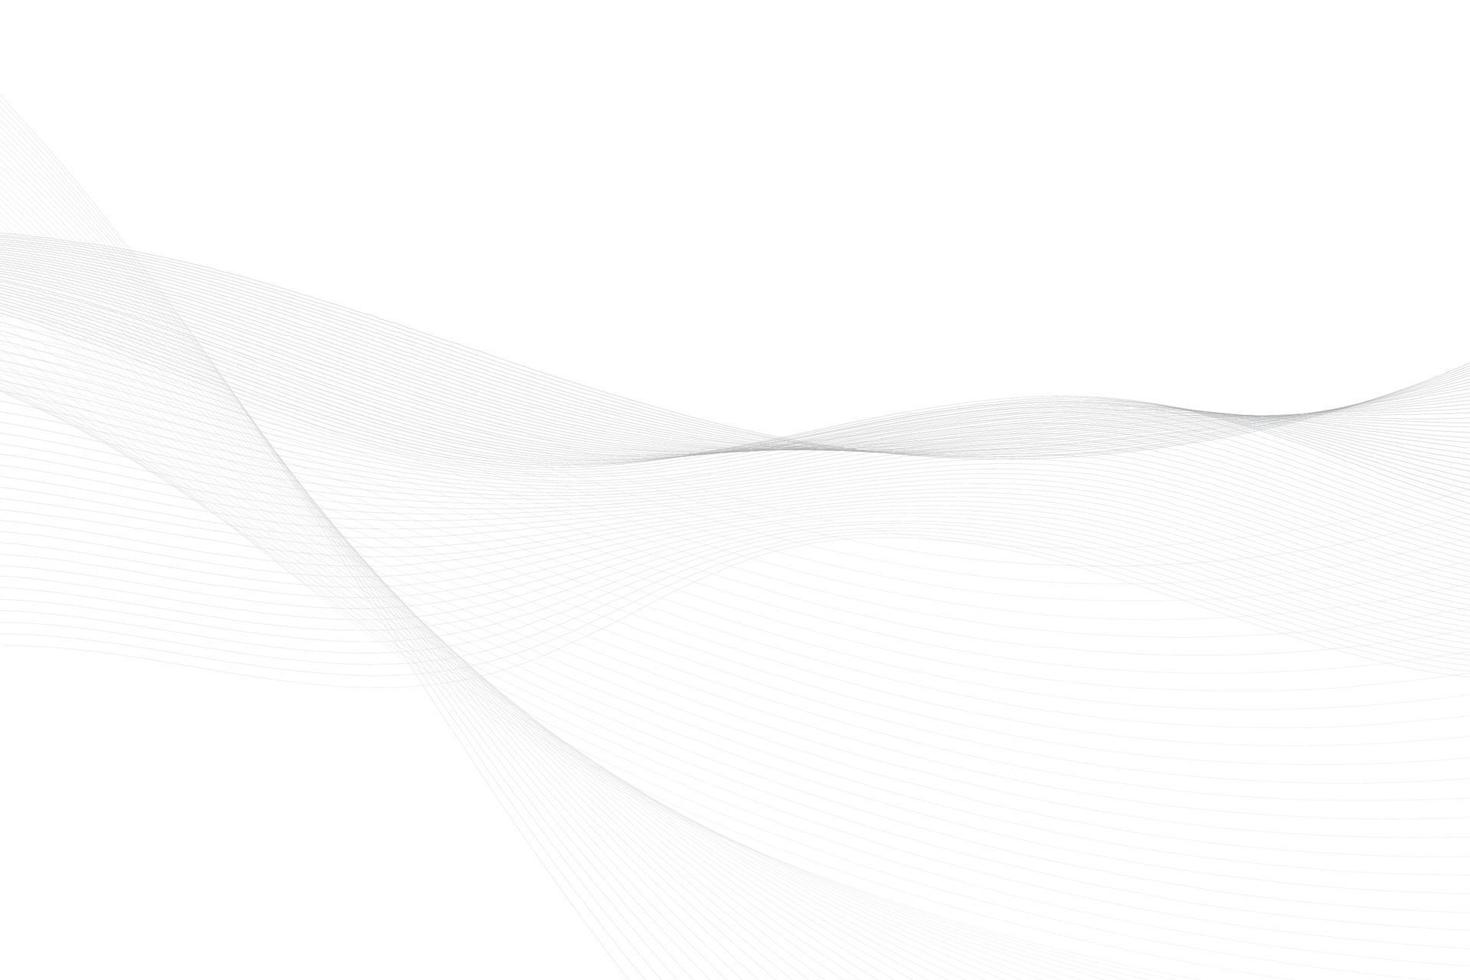 color blanco y gris abstracto, fondo de rayas de diseño moderno con elemento de onda. ilustración vectorial vector